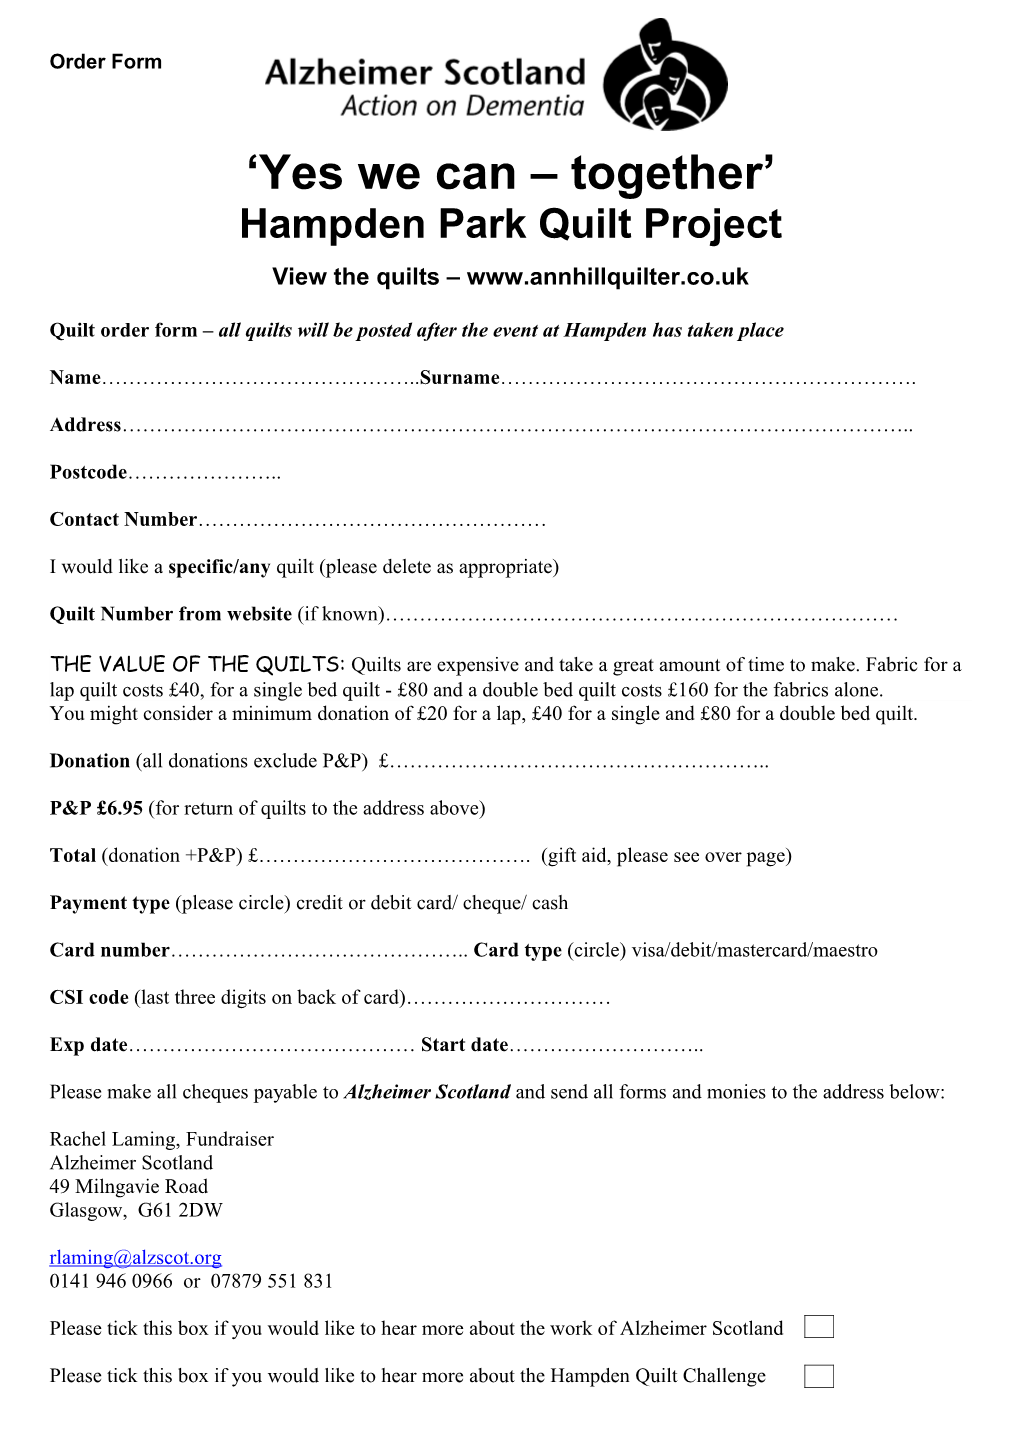 Hampden Park Quilt Project